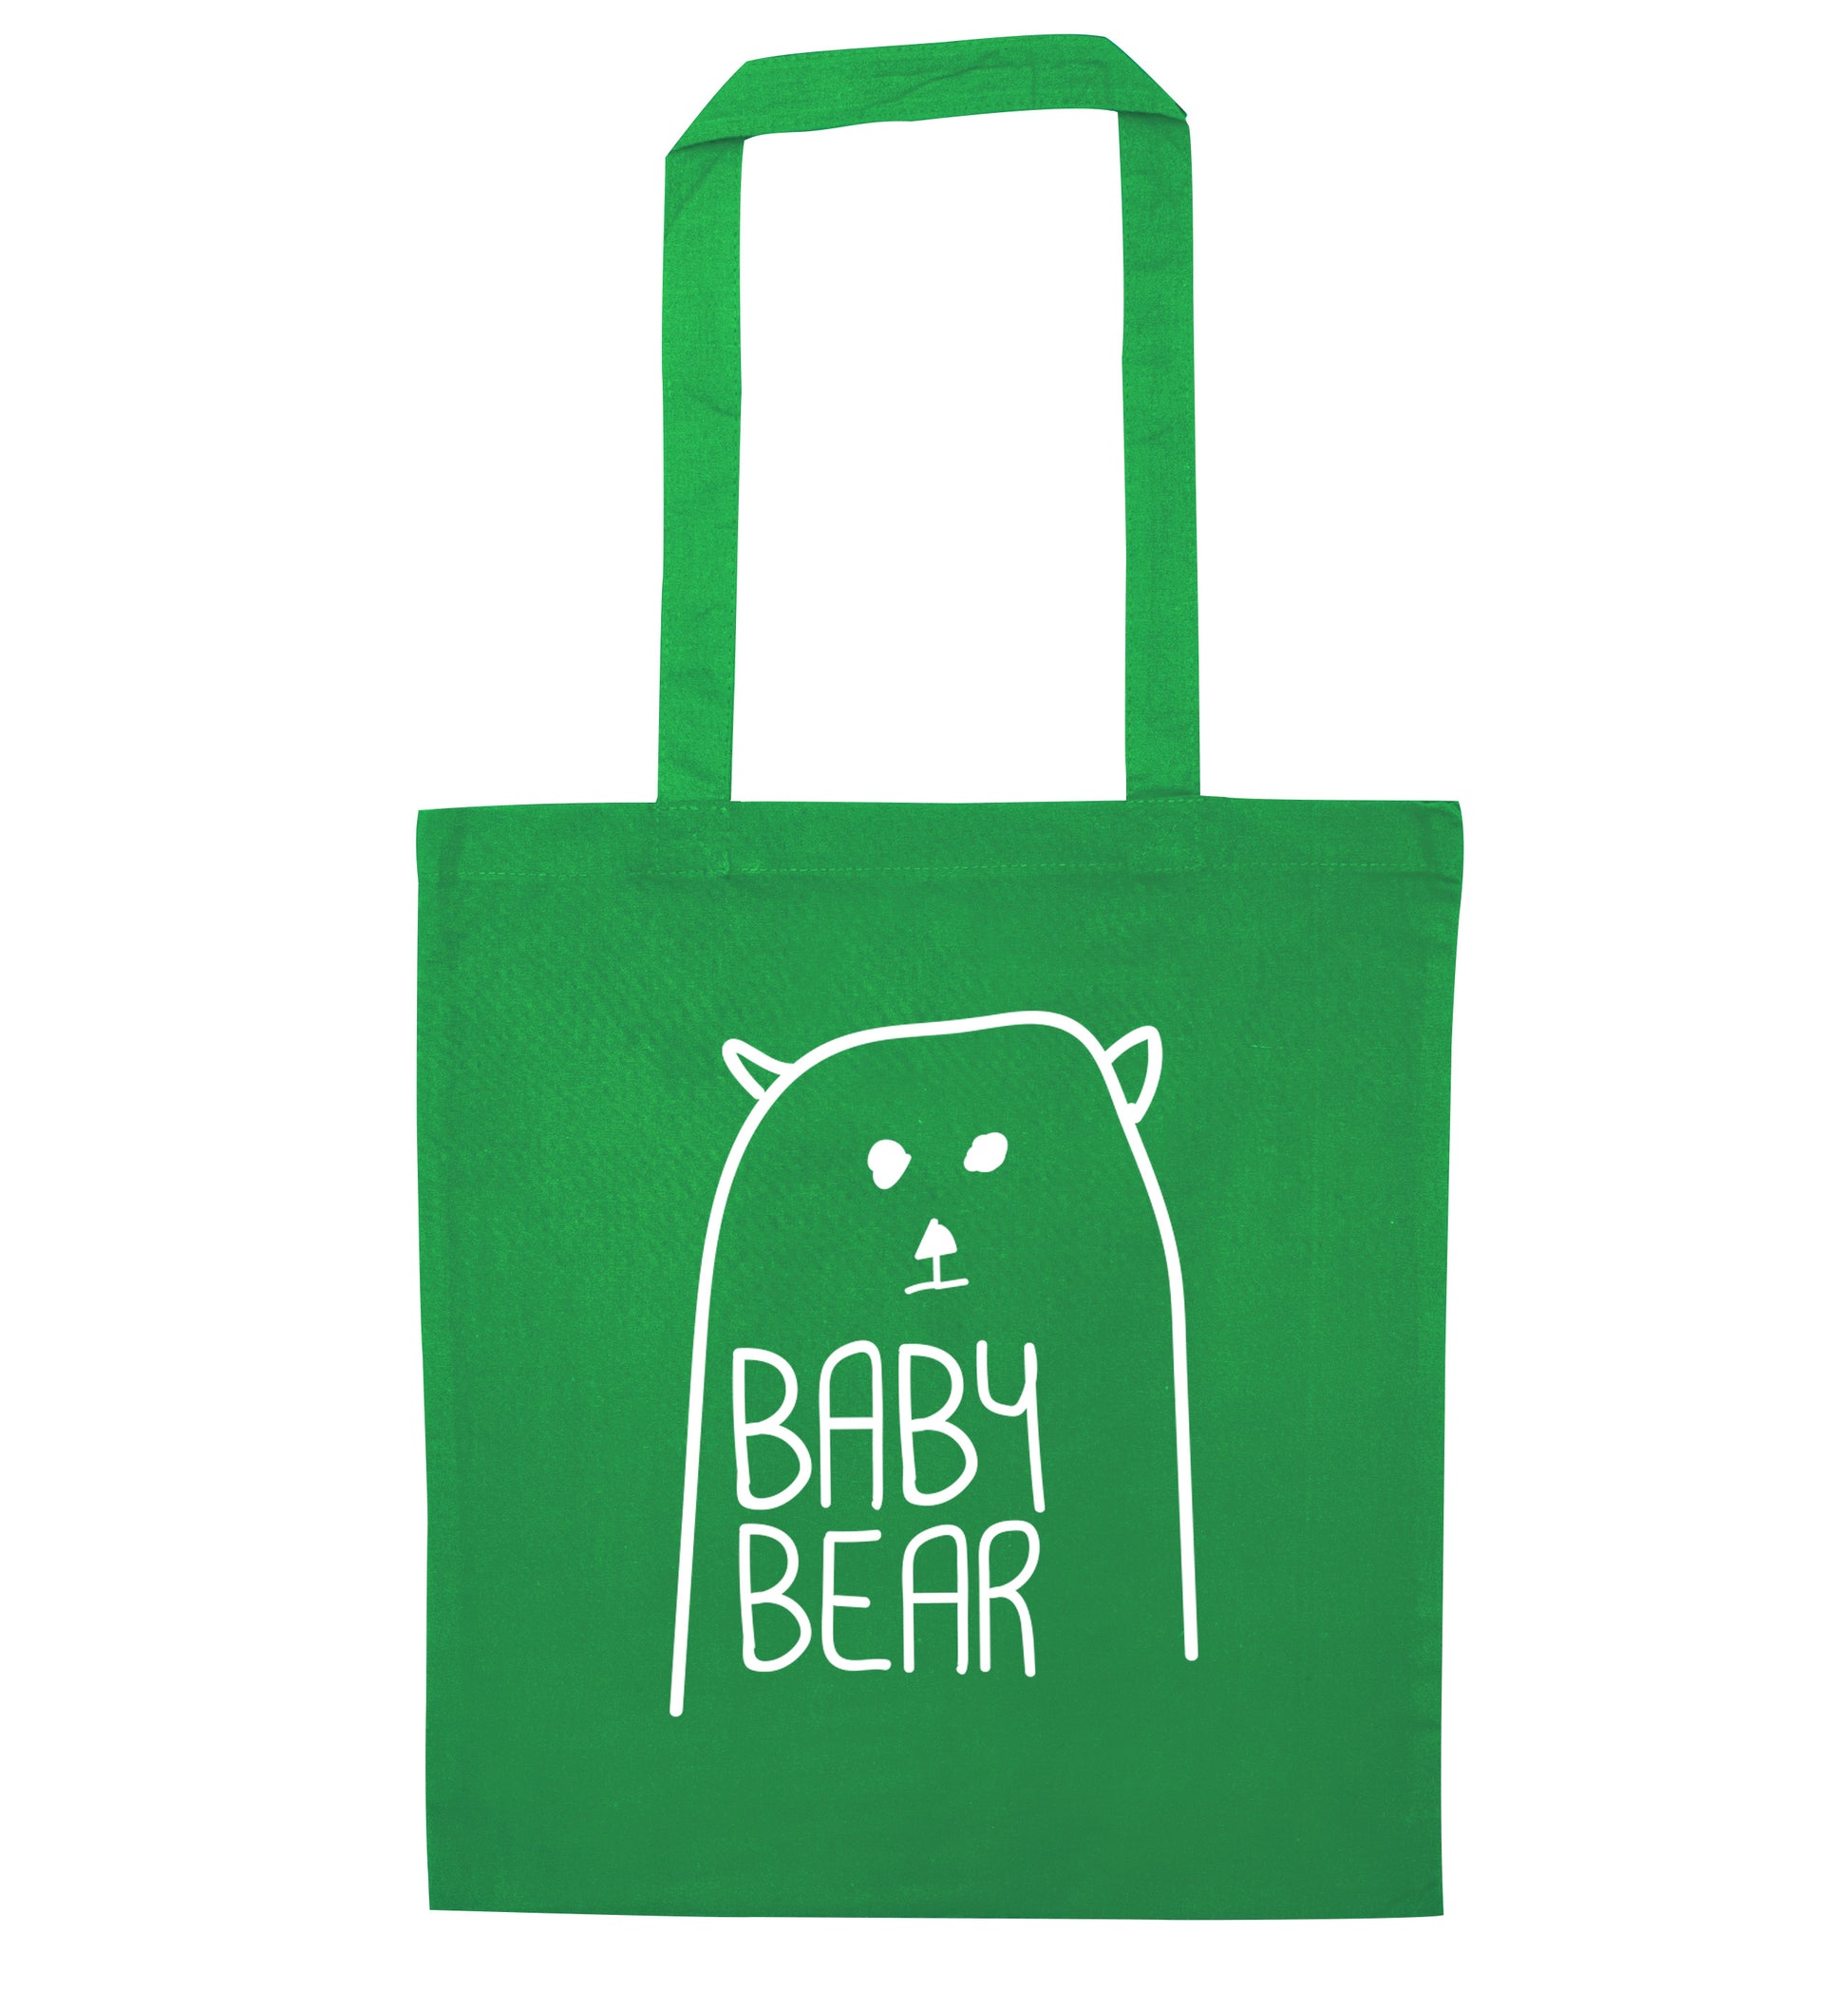 Baby bear green tote bag